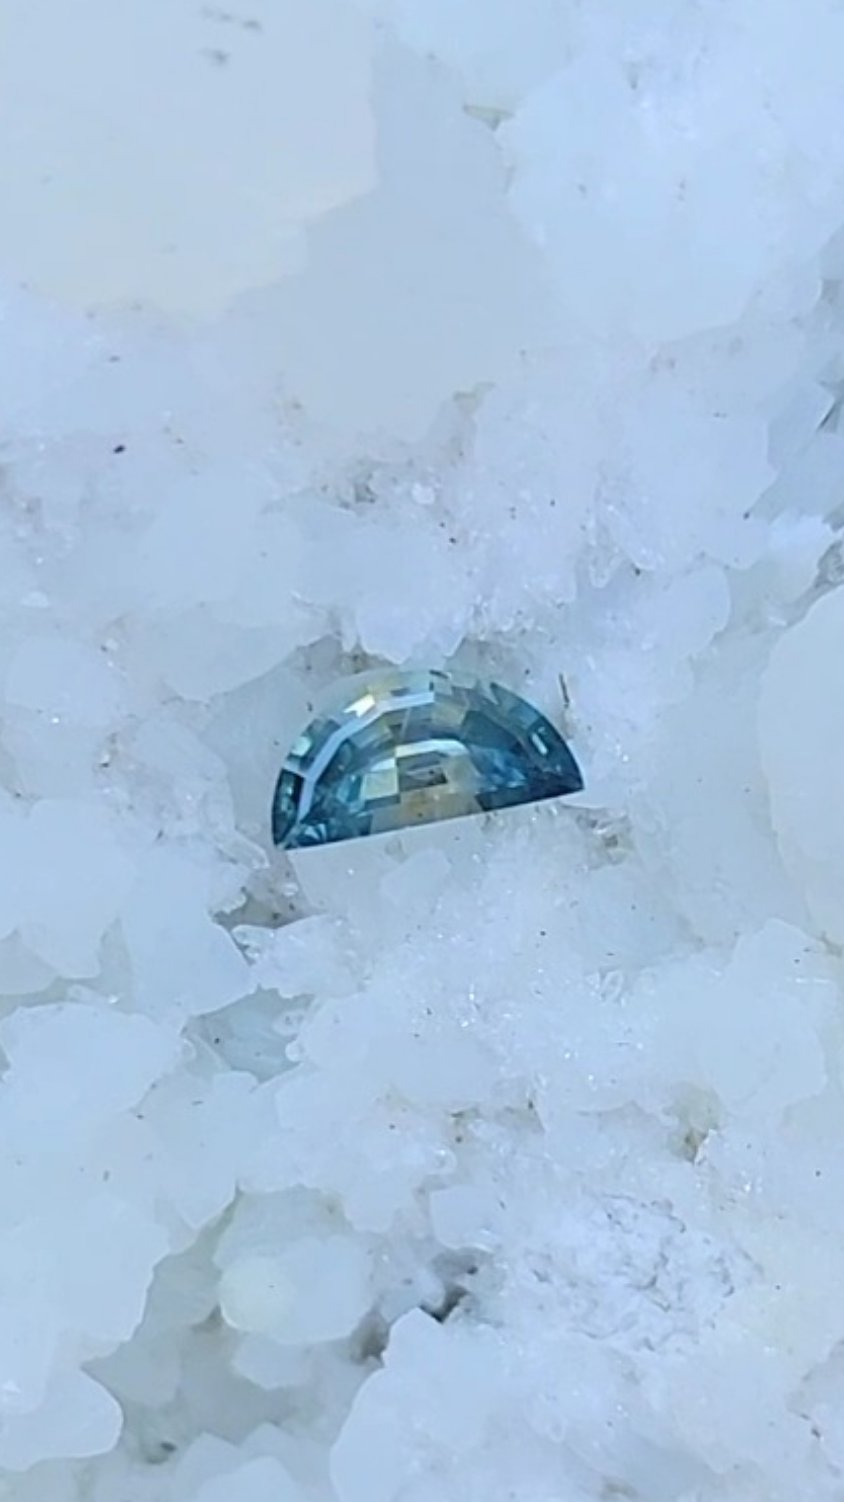 Montana Sapphire .46 CT Blue, Teal, Peach Half Moon Cut